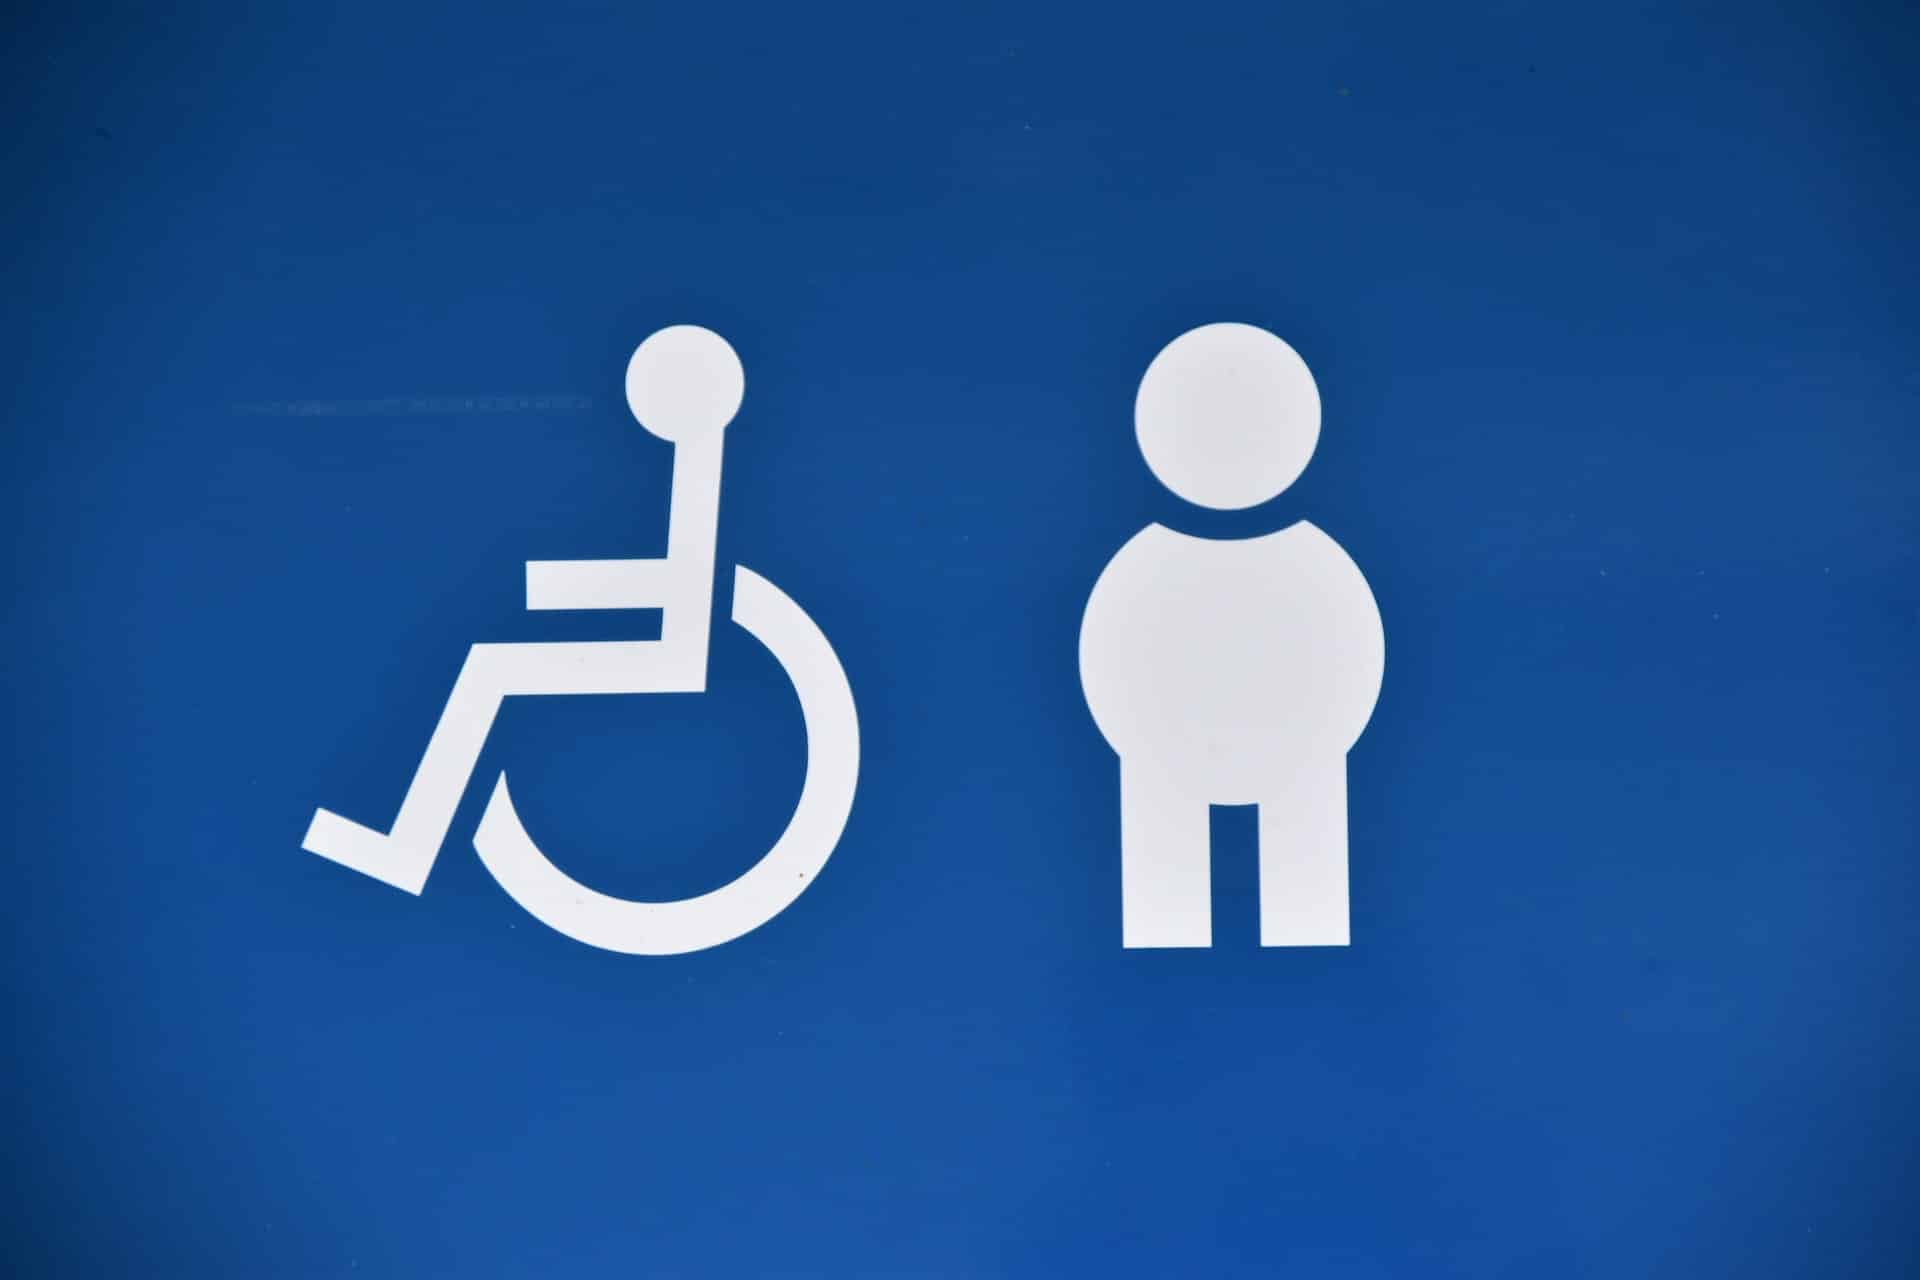 Imagem com dois ícones que representam a acessibilidade e inclusão